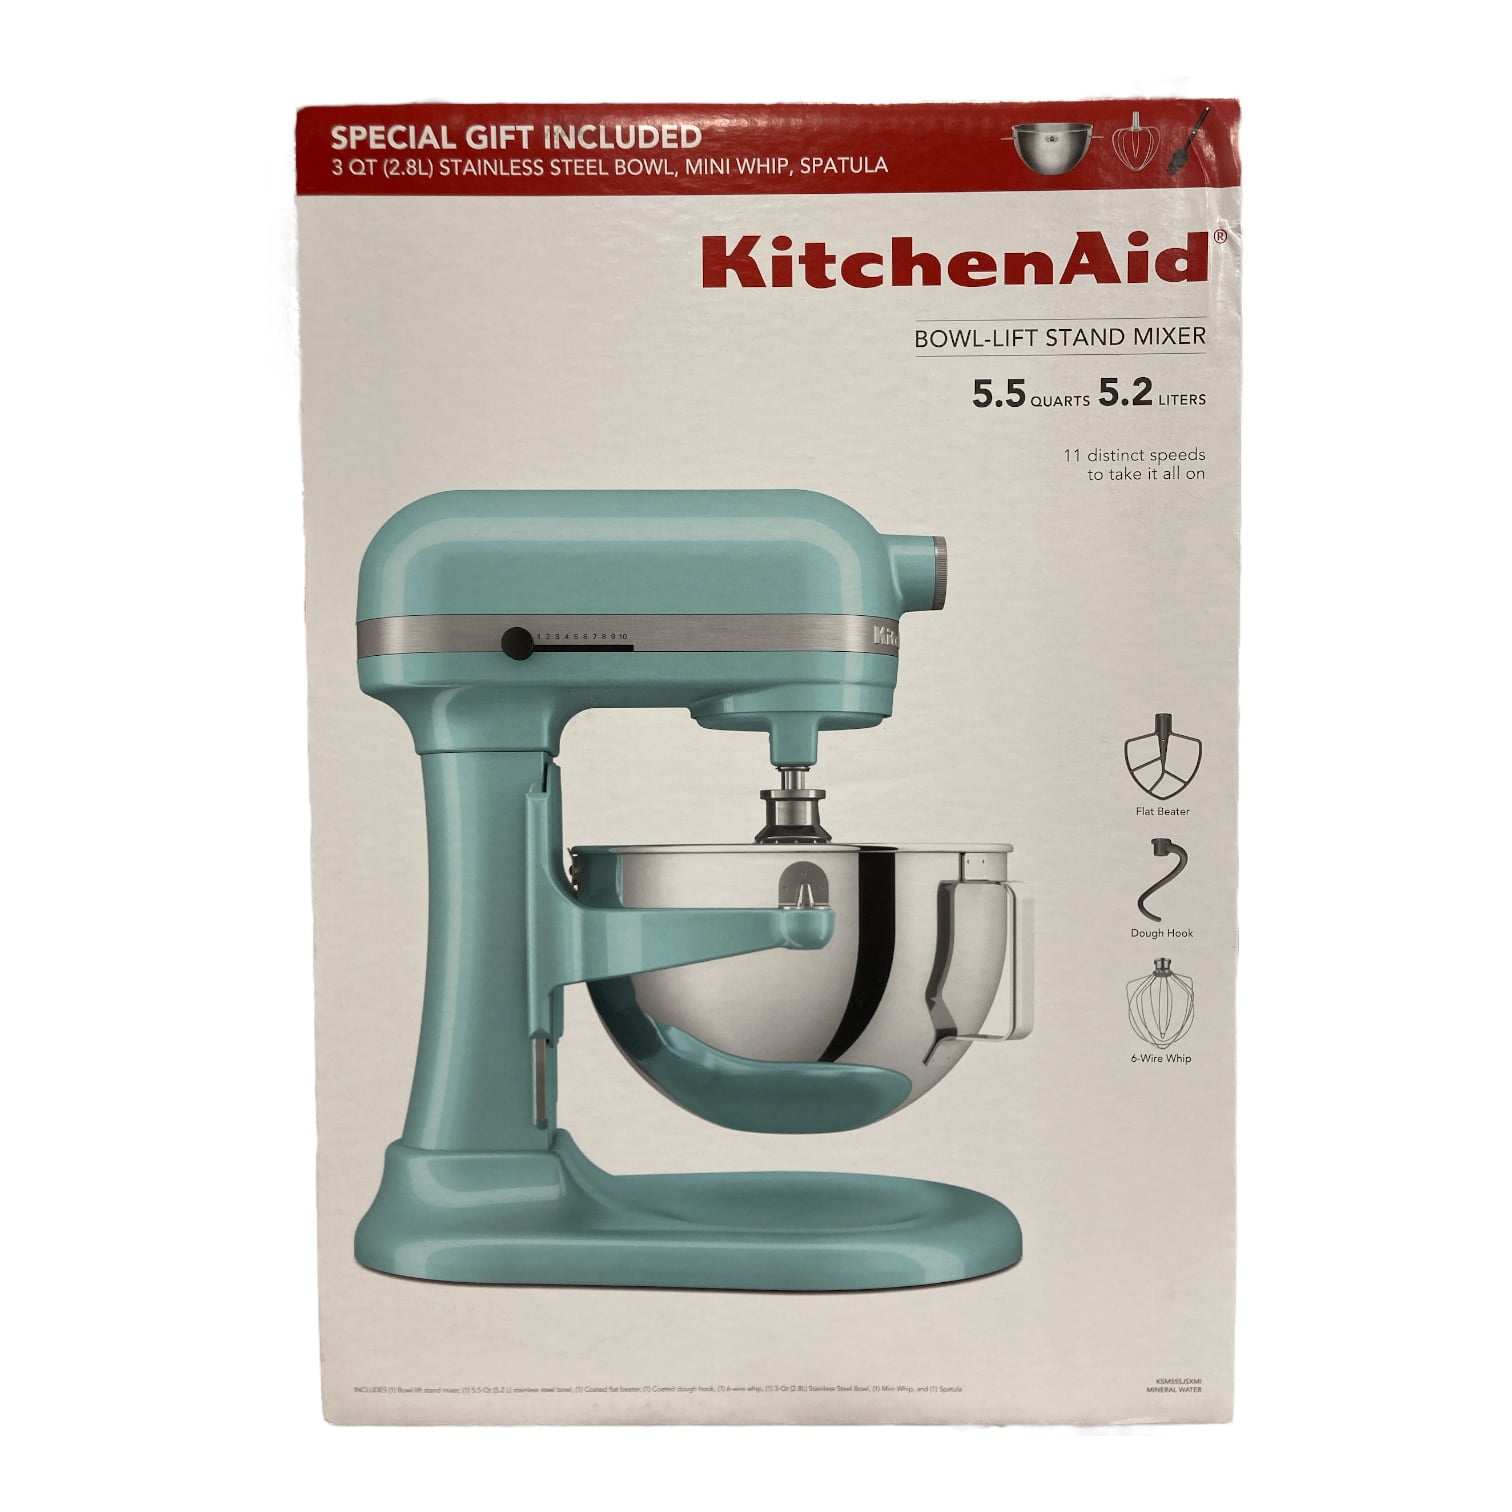 Kitchenaid Classic 4.5qt Stand Mixer - White : Target